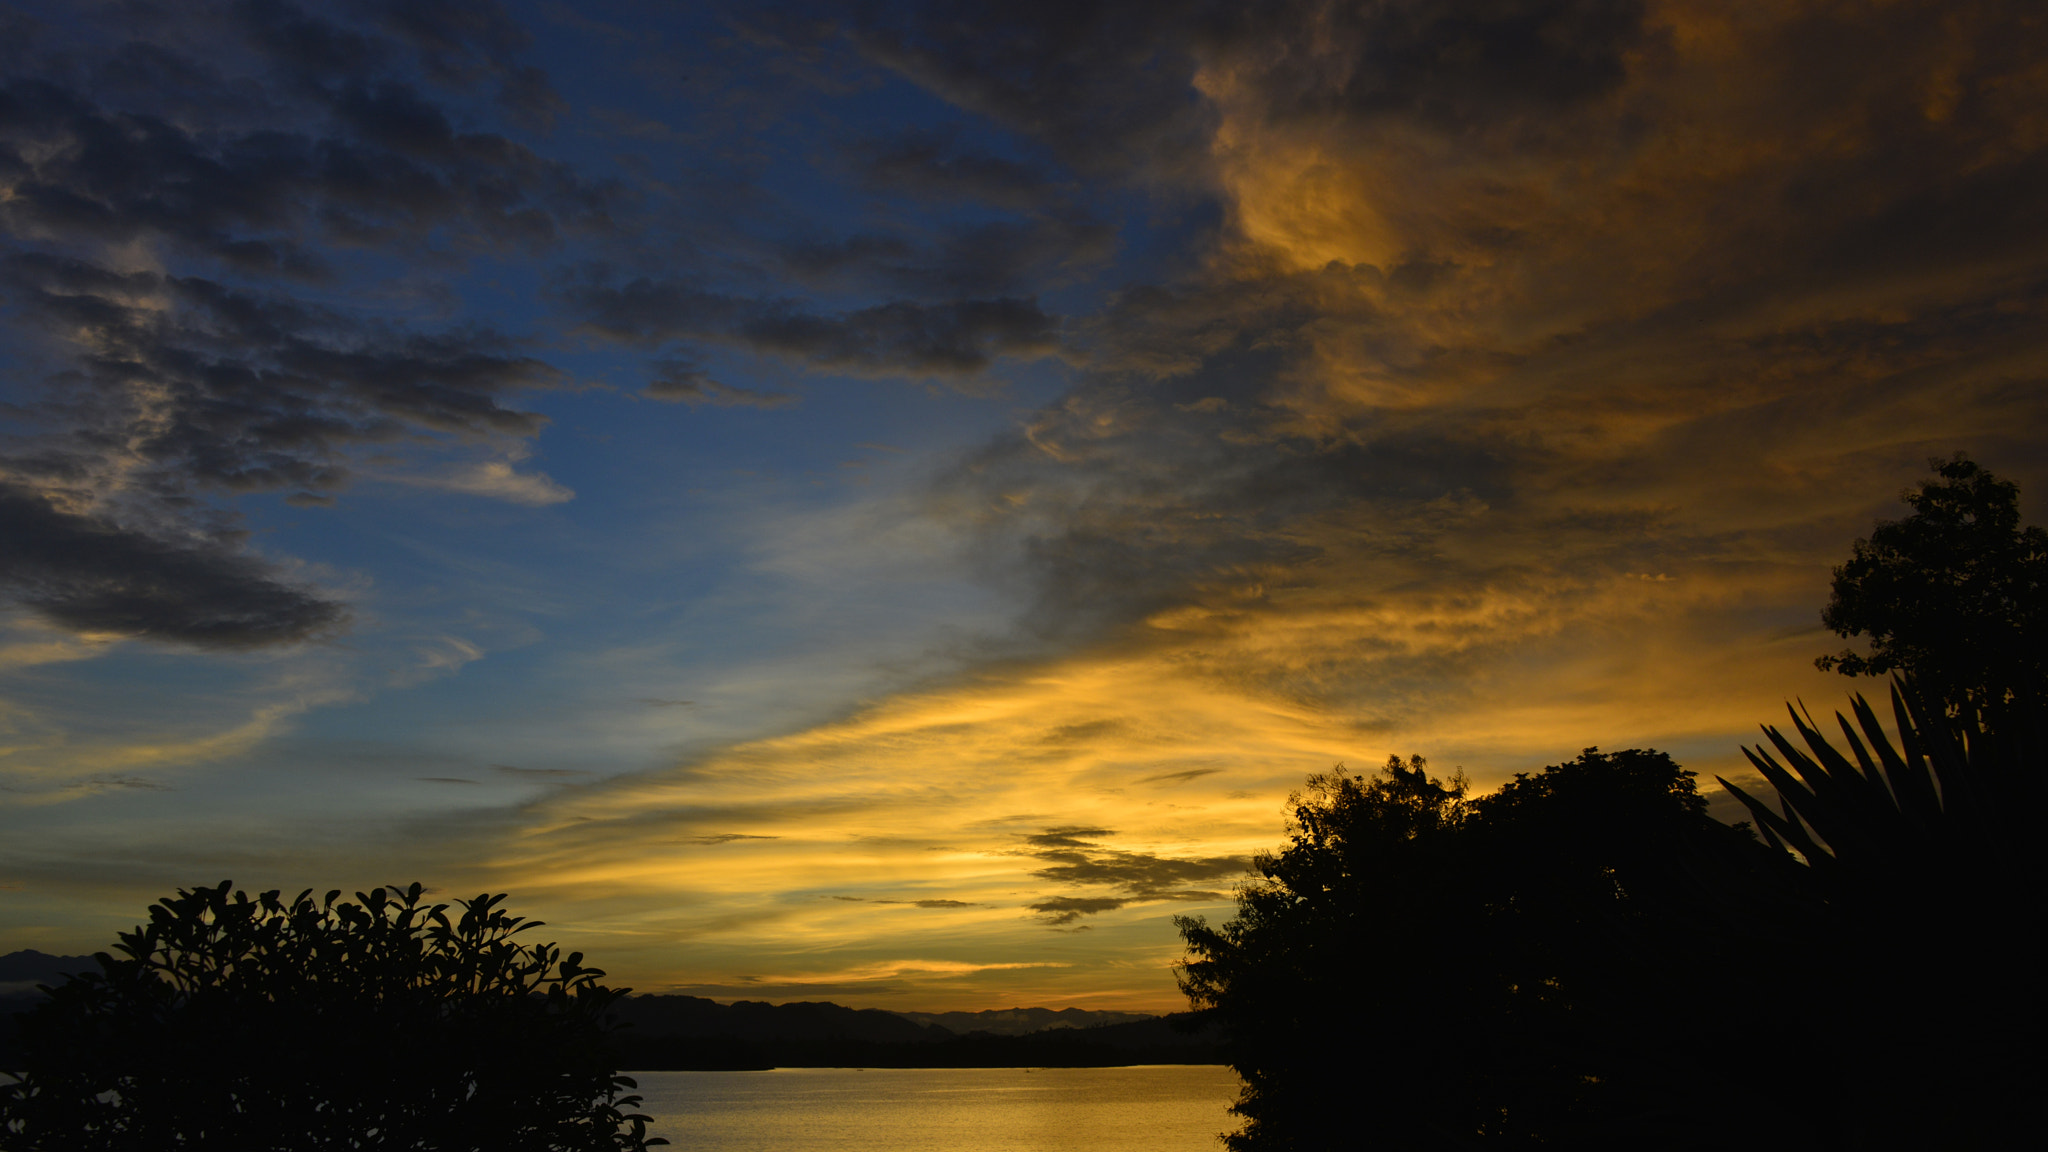 Nikon D800E sample photo. Thaï sunset photography